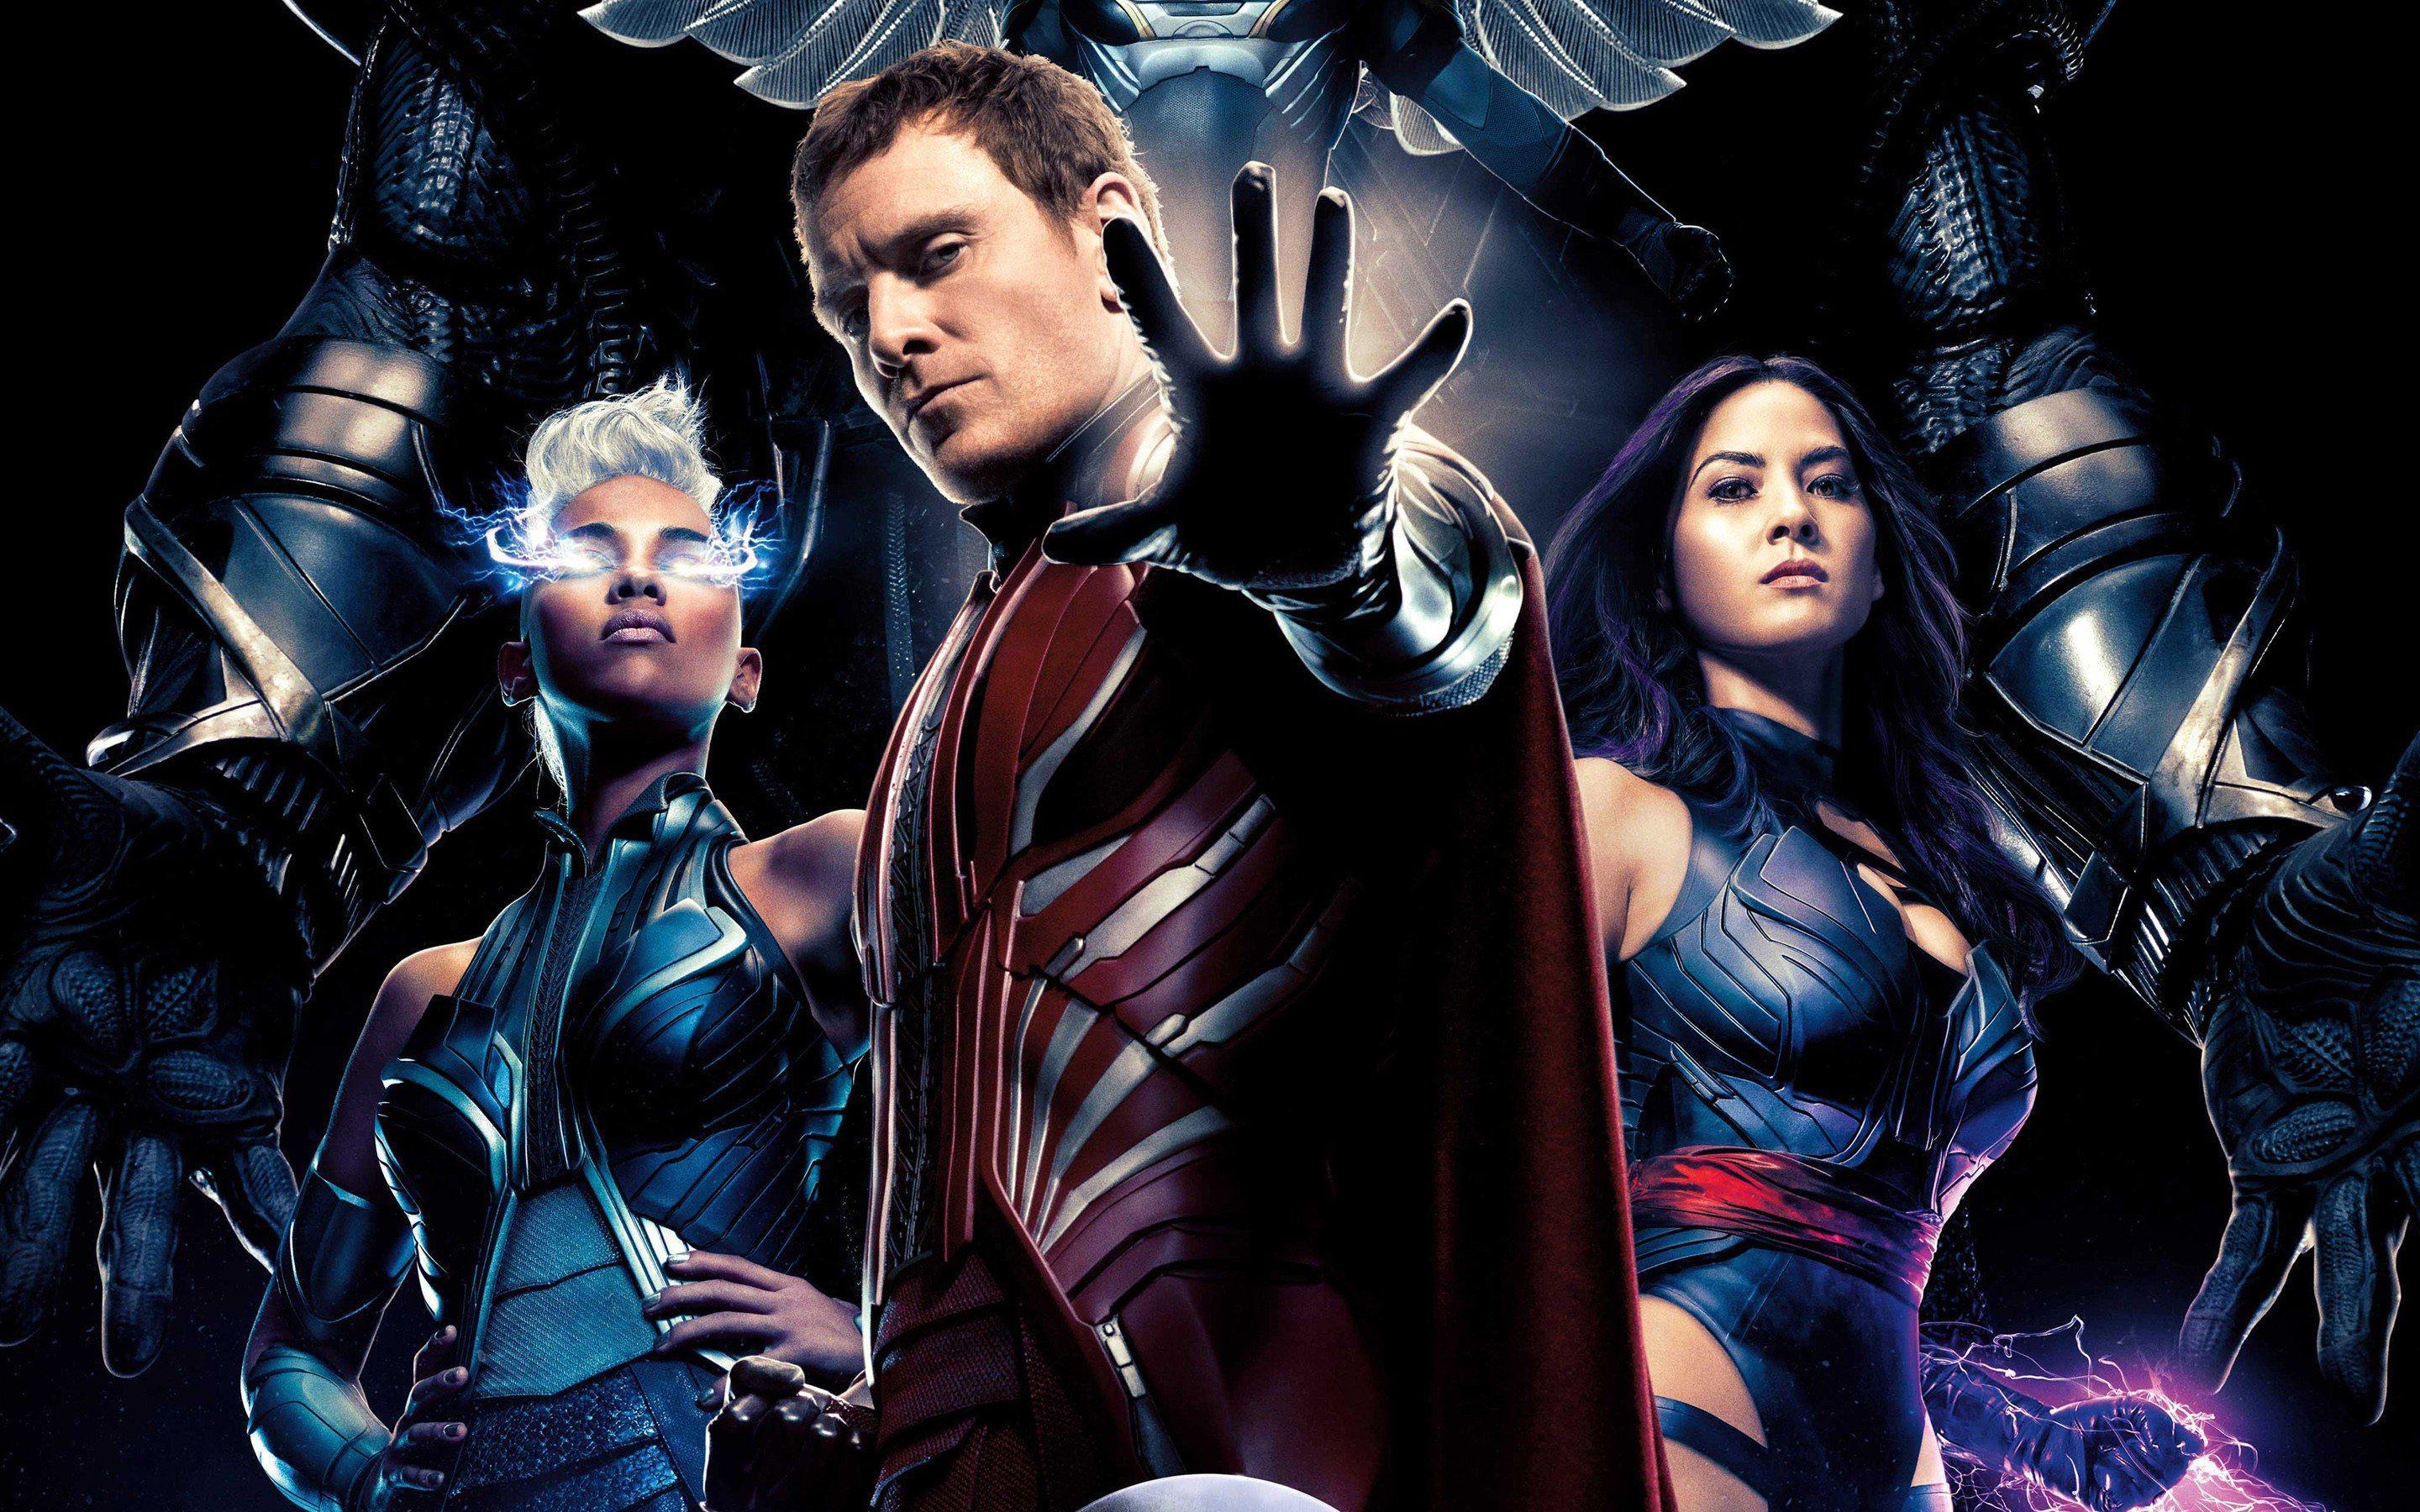 Noturno e Anjo se enfrentam em cena de X-Men: Apocalipse; veja também o novo pôster IMAX!